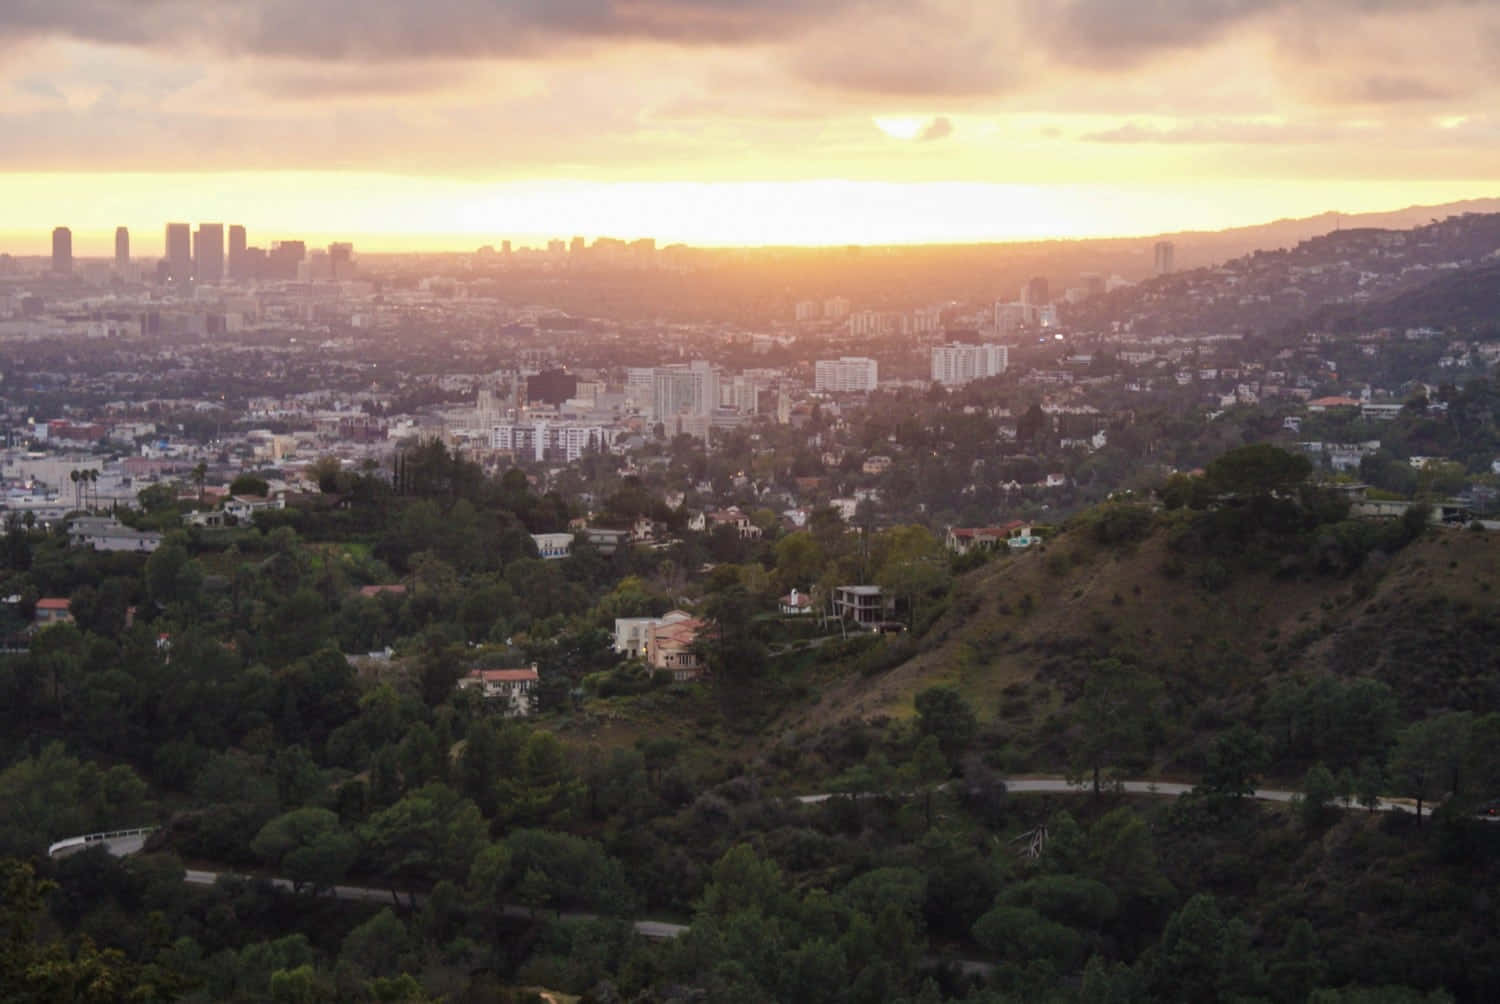 Stunning Los Angeles Skyline at Sunset